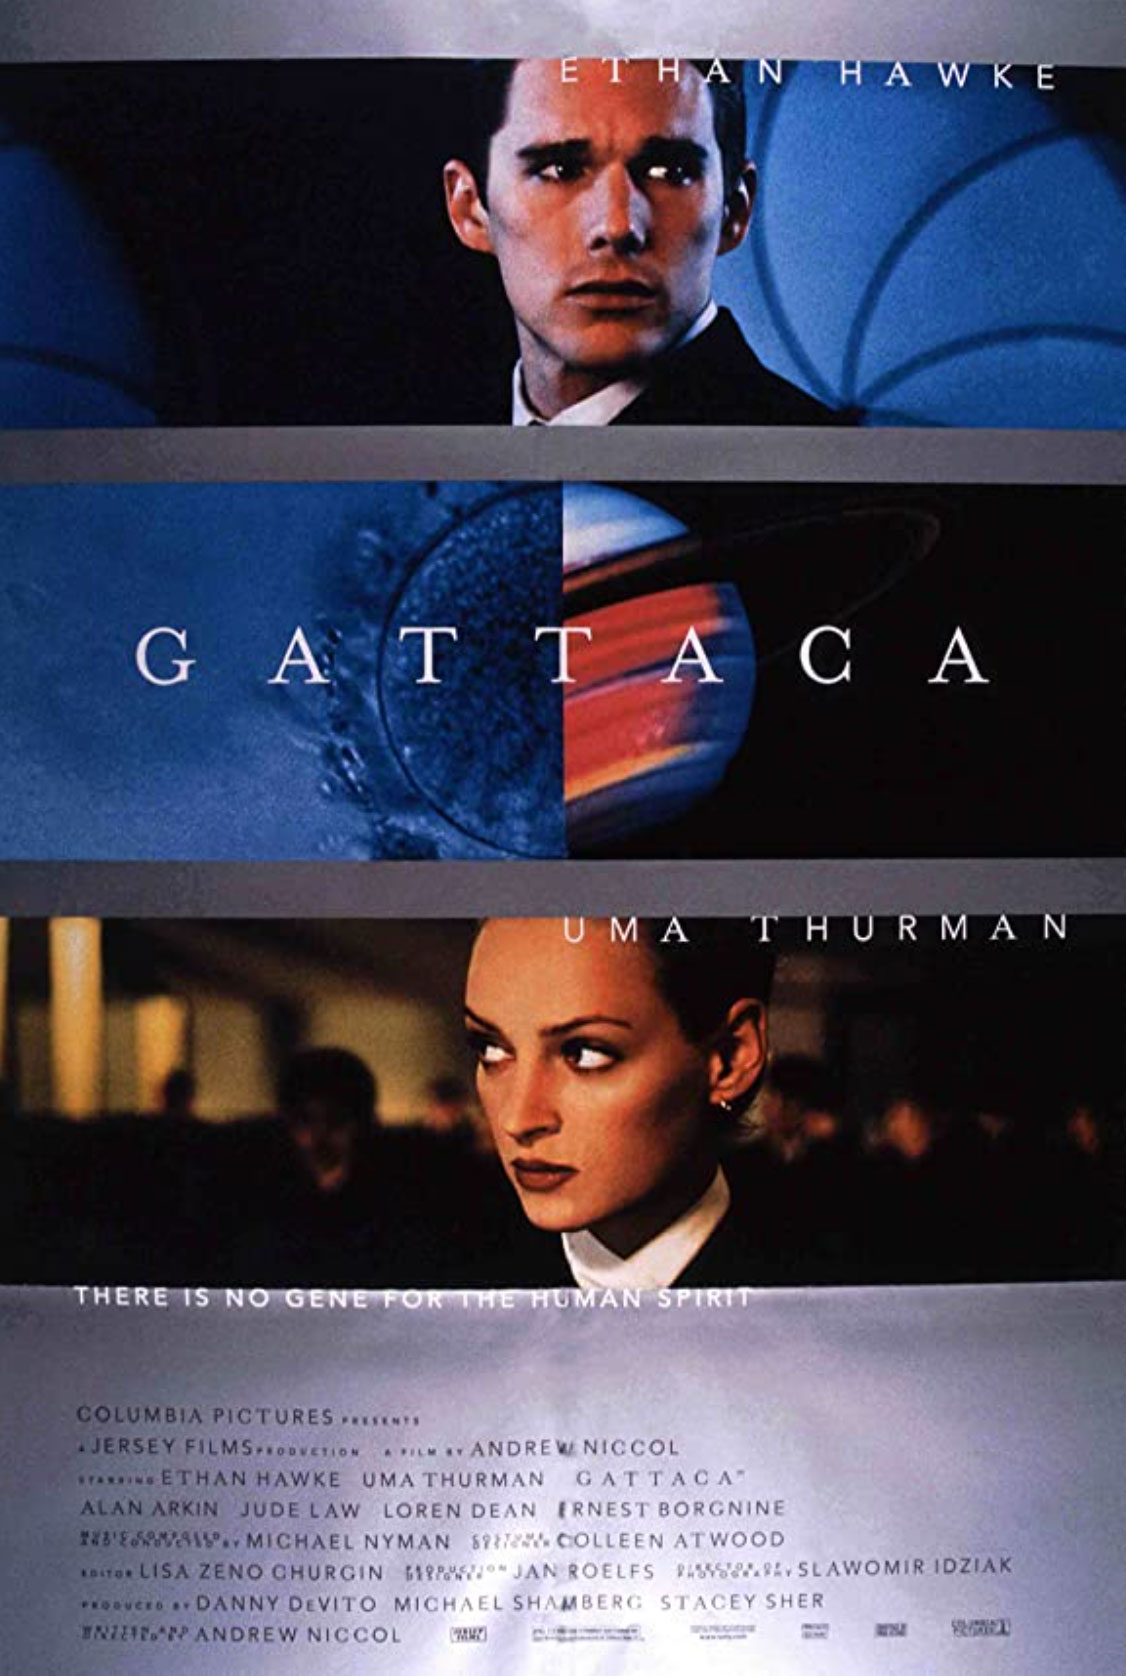 Plakatmotiv: Gattaca (1997)